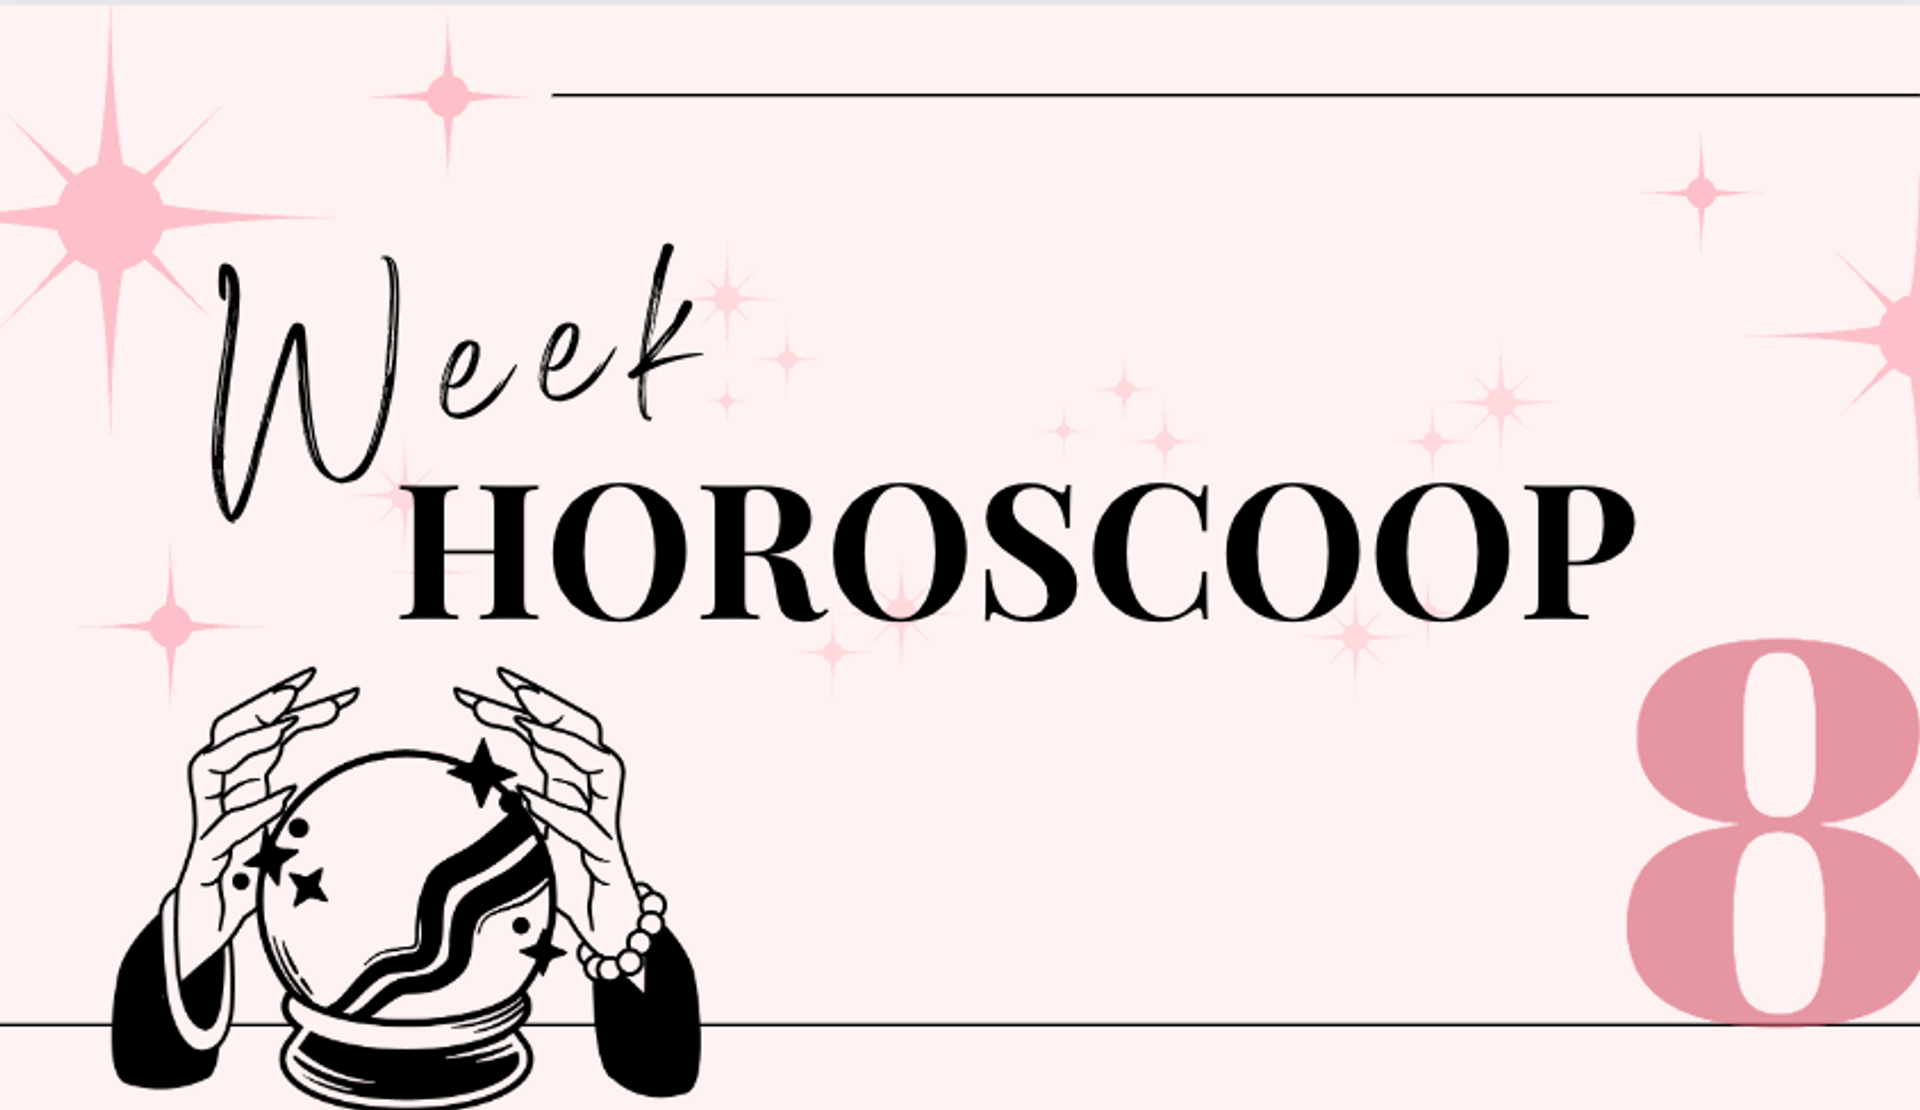 weekhoroscoop-week-8